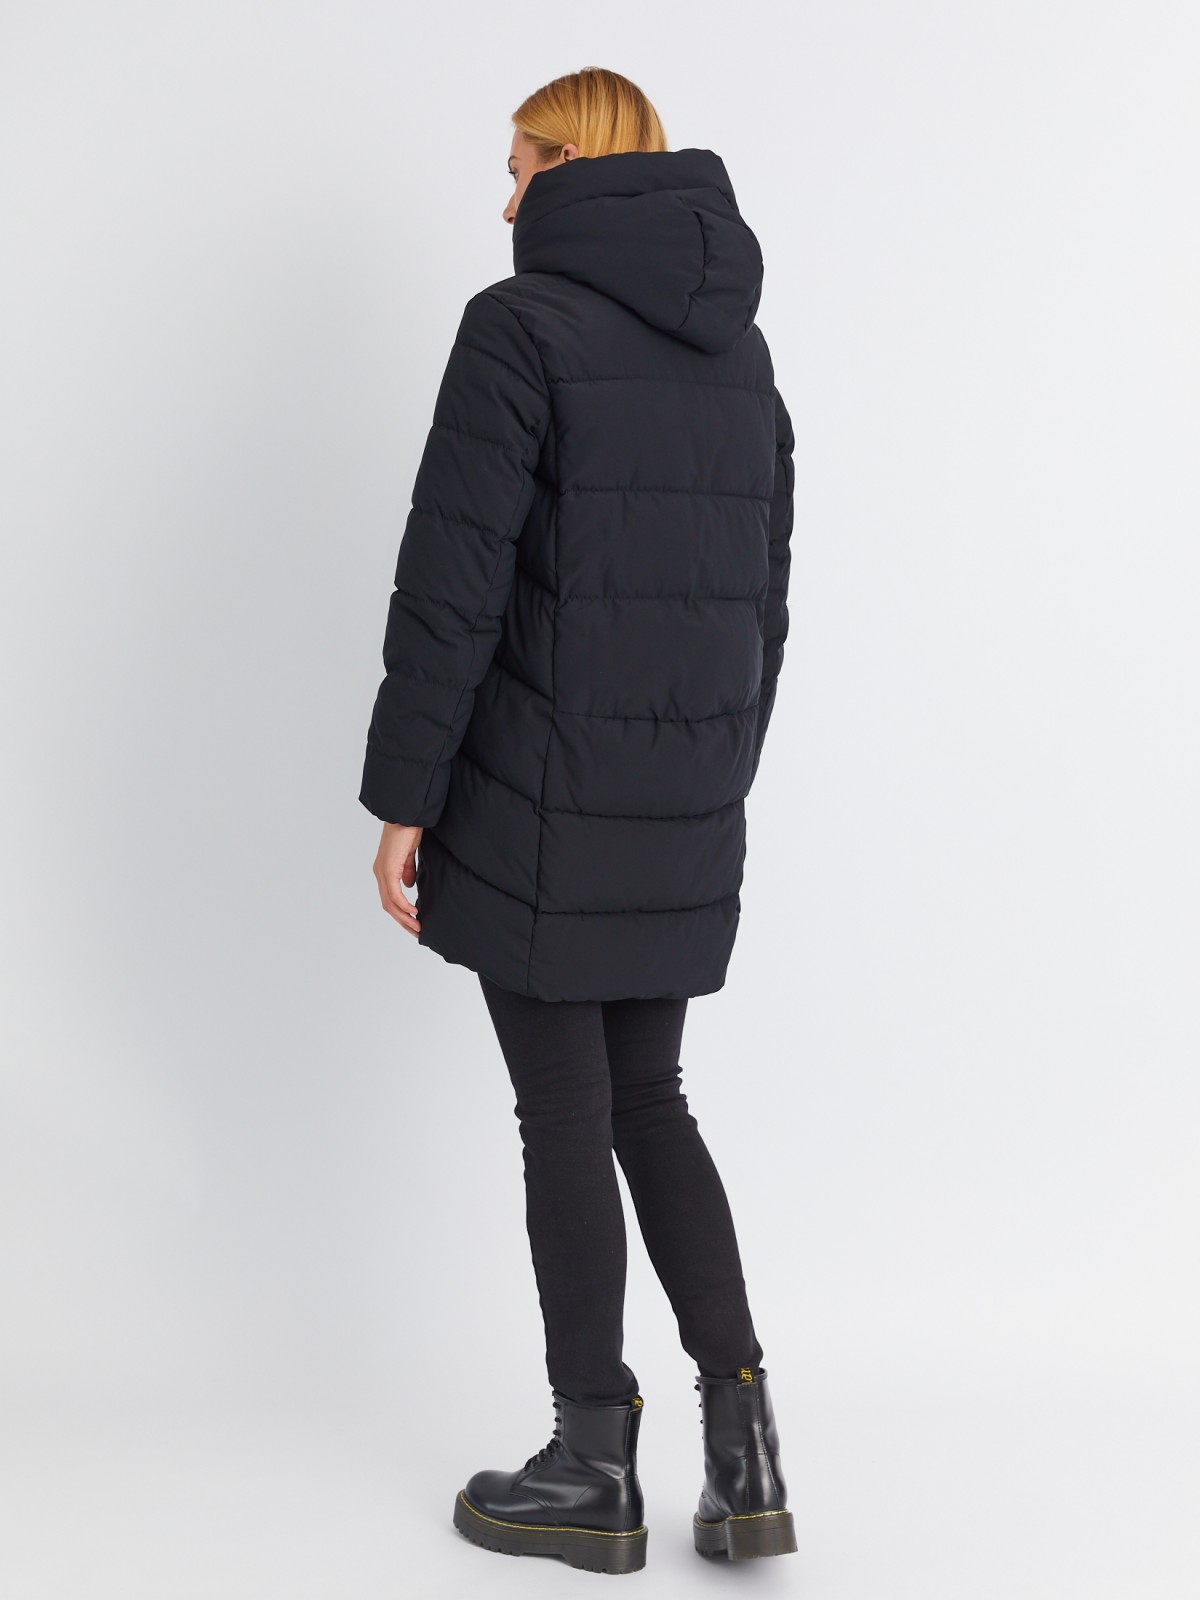 Тёплая стёганая куртка-пальто удлинённого фасона с капюшоном zolla 02334522J144, цвет черный, размер XS - фото 6